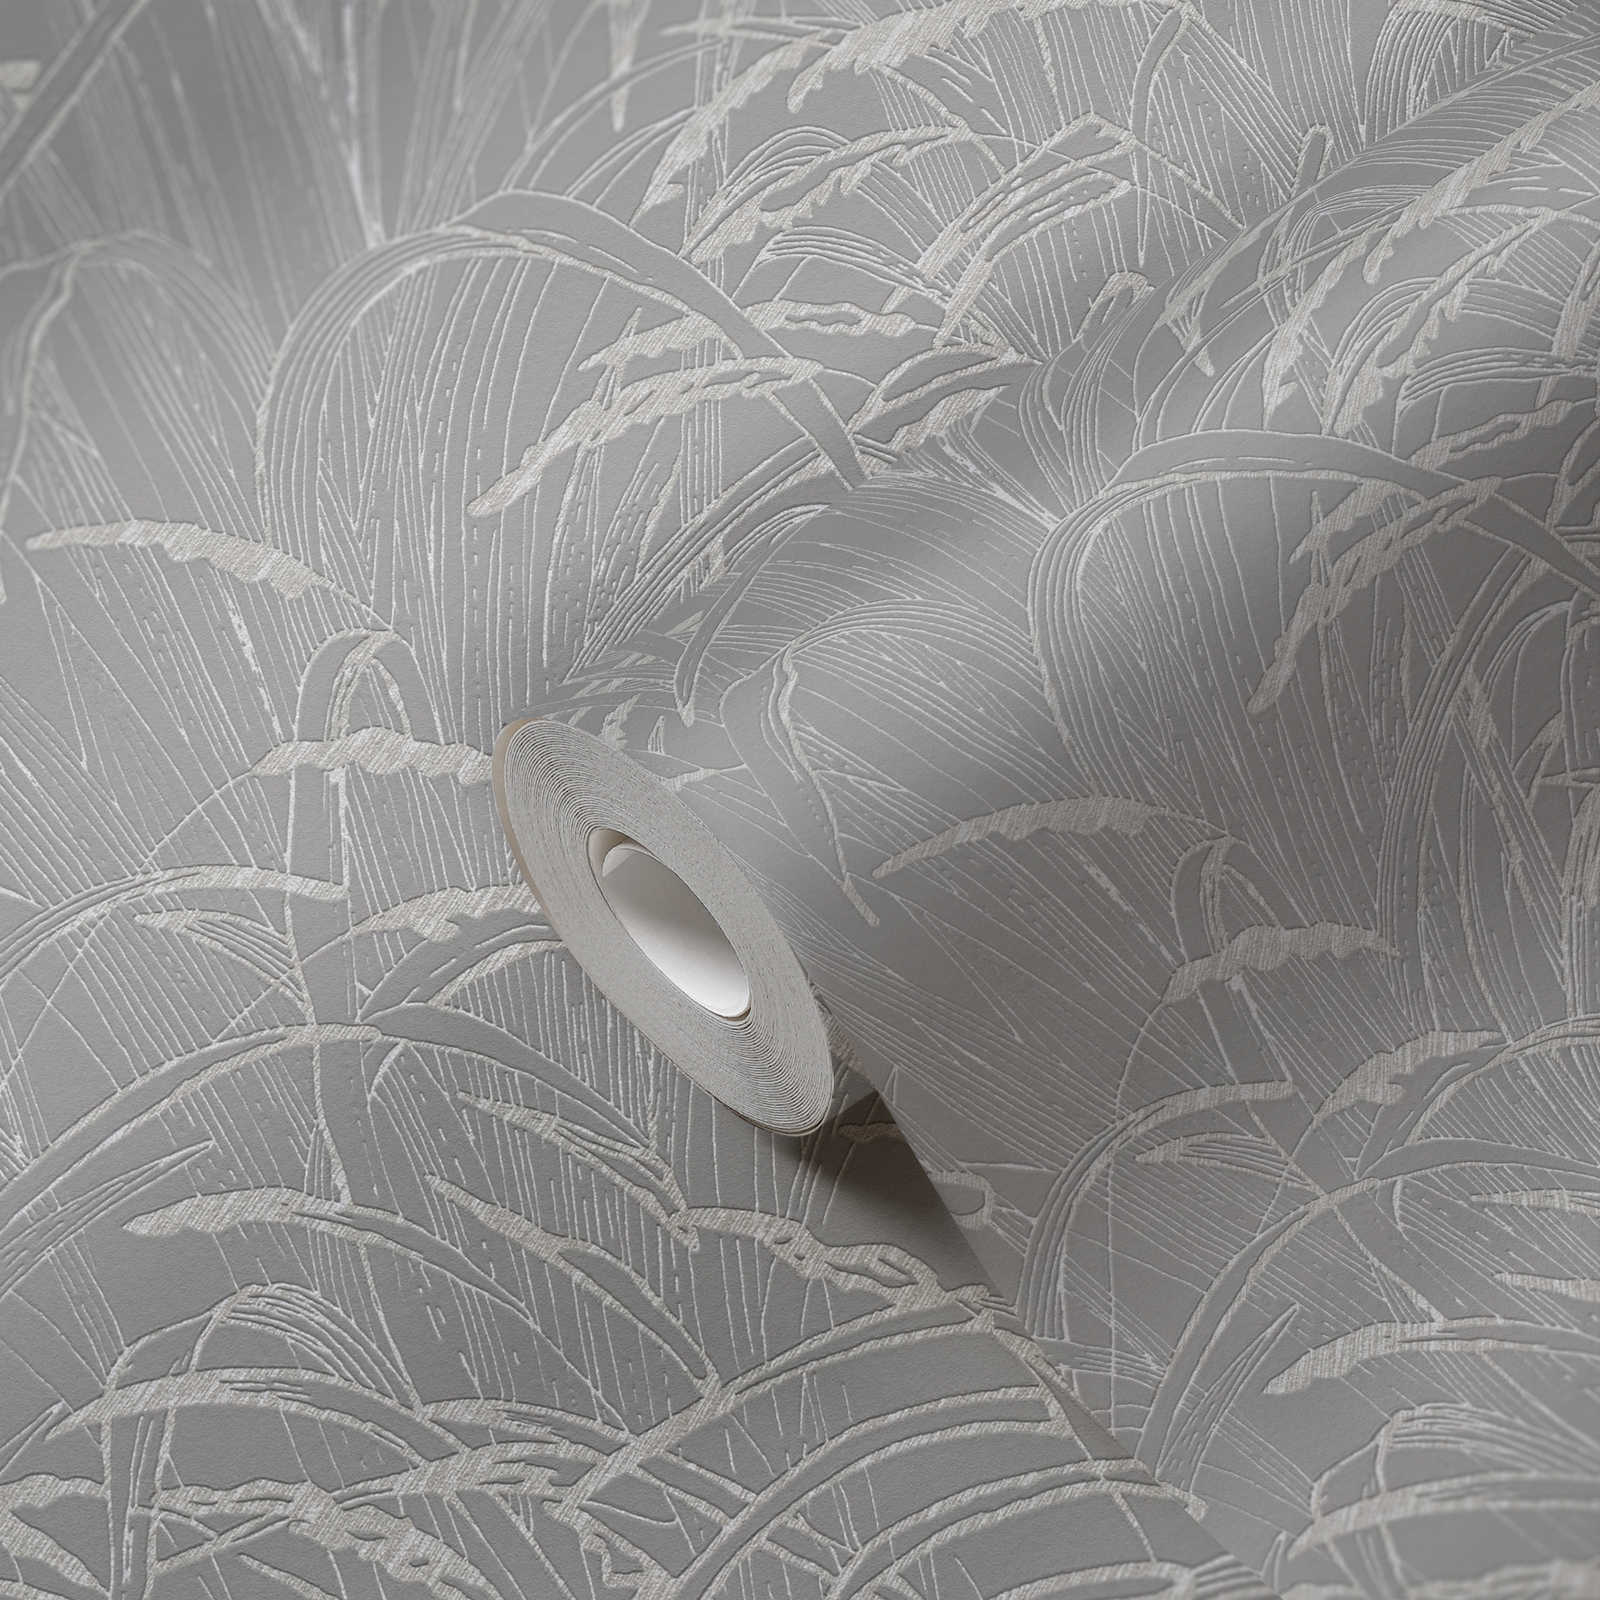             Natuurbehang rietbladeren met metallic kleur - grijs
        